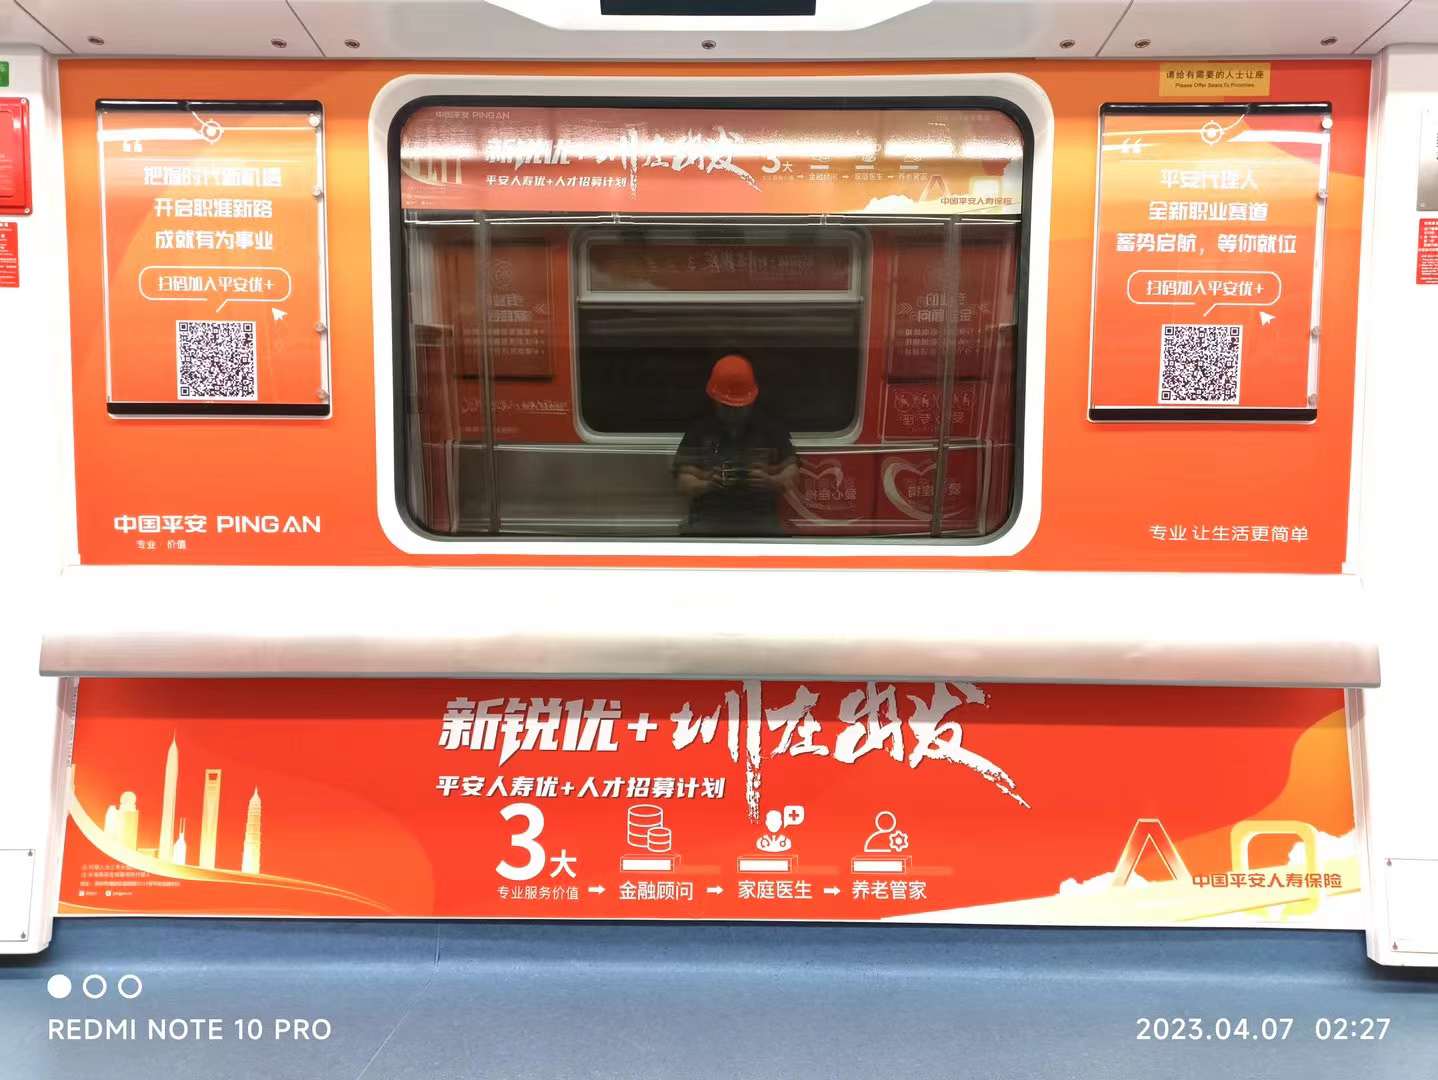 金融行业新锐金融深圳地铁广告宣传上线